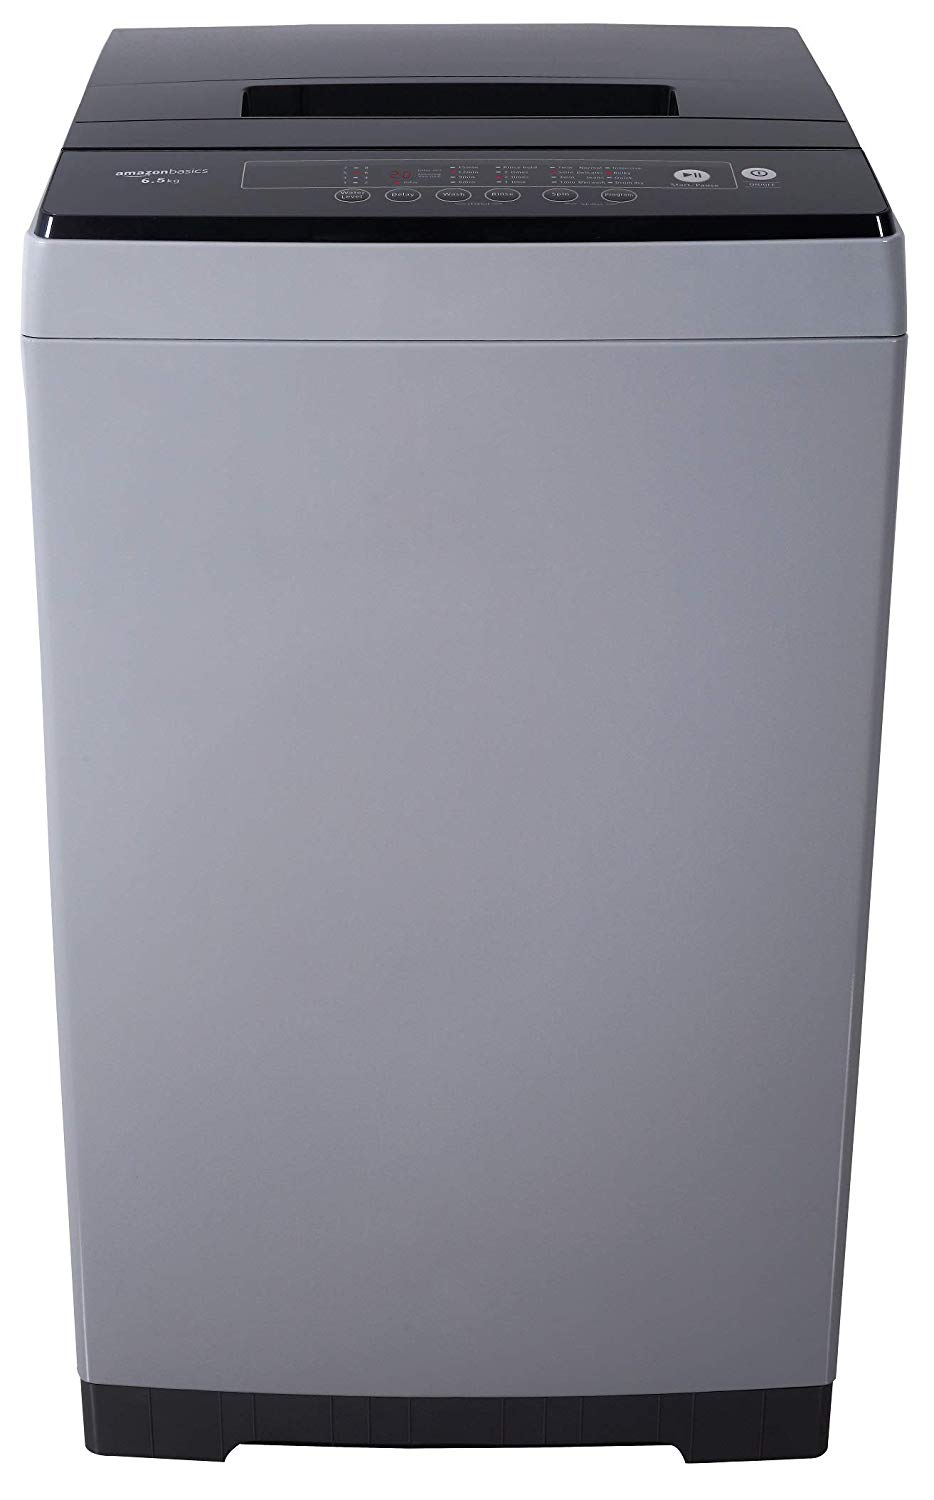 AmazonBasics 6.5 kg Fully-Automatic Top Load Washing Machine